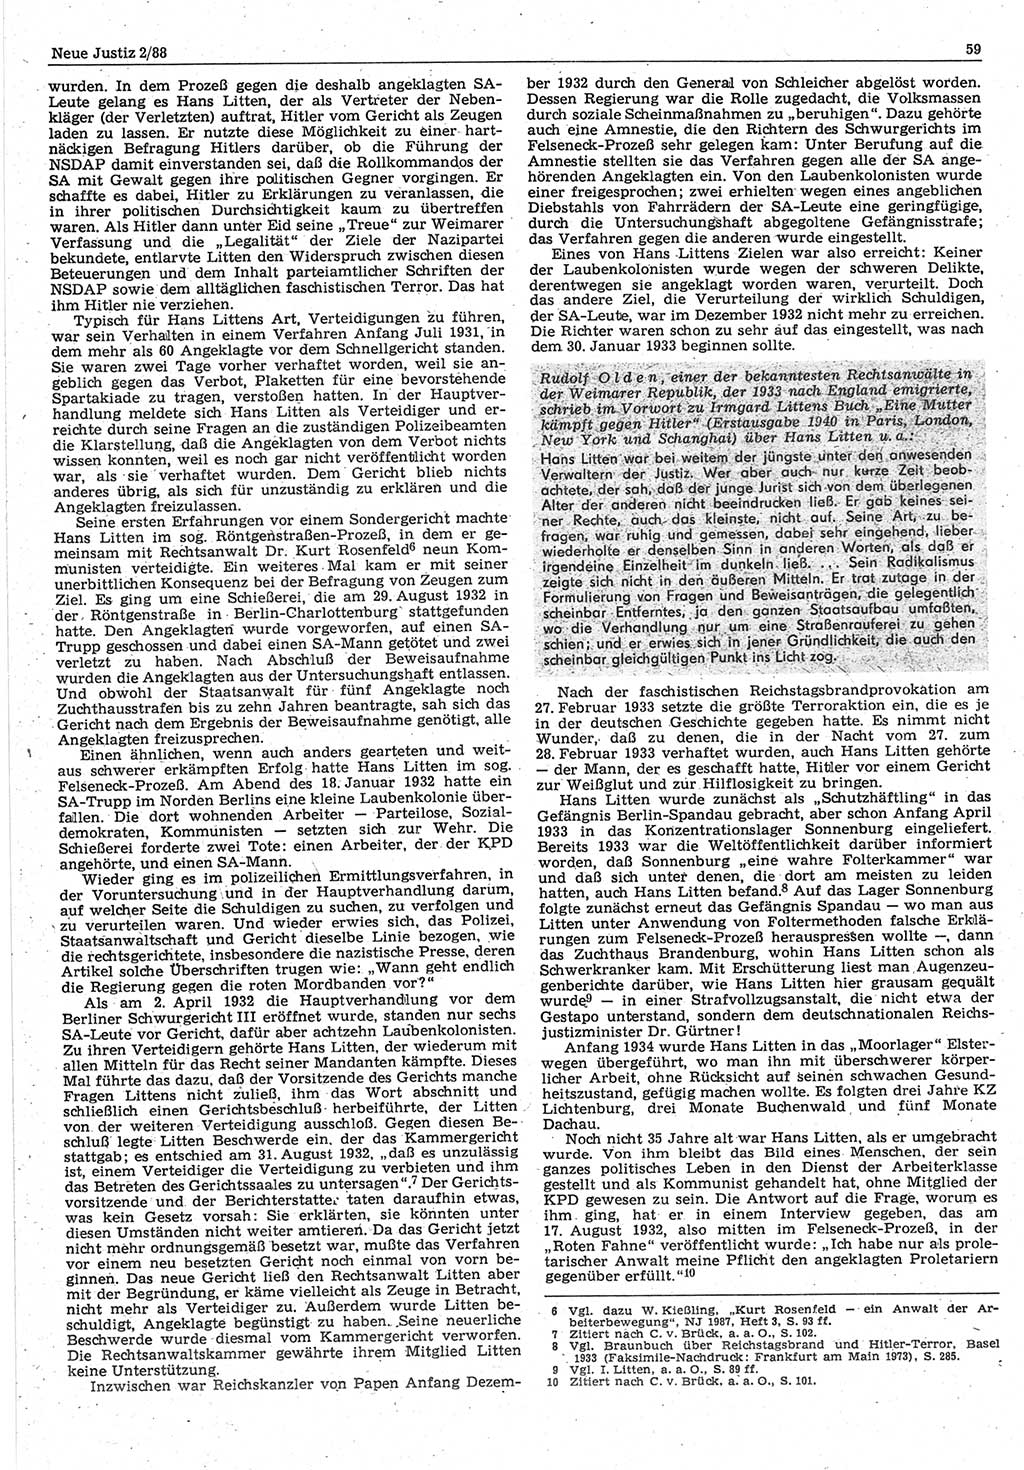 Neue Justiz (NJ), Zeitschrift für sozialistisches Recht und Gesetzlichkeit [Deutsche Demokratische Republik (DDR)], 42. Jahrgang 1988, Seite 59 (NJ DDR 1988, S. 59)